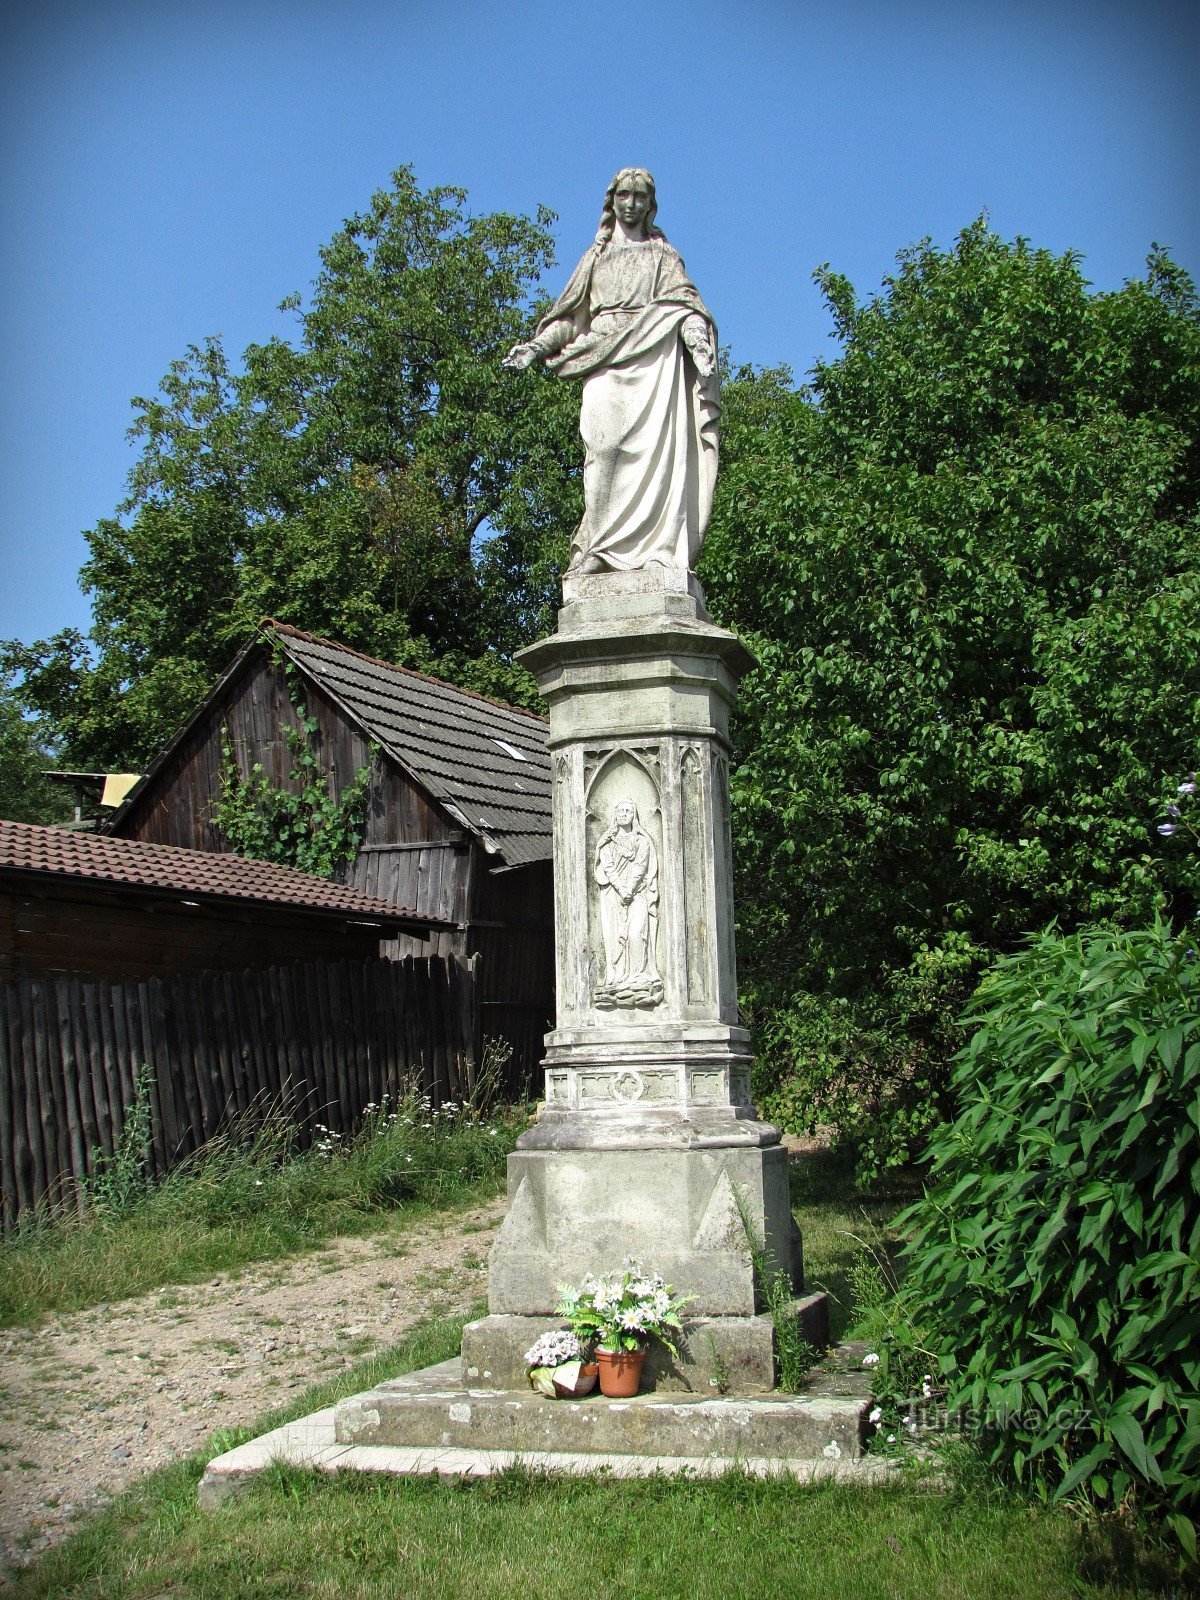 Hostišová - άλλα μνημεία του χωριού